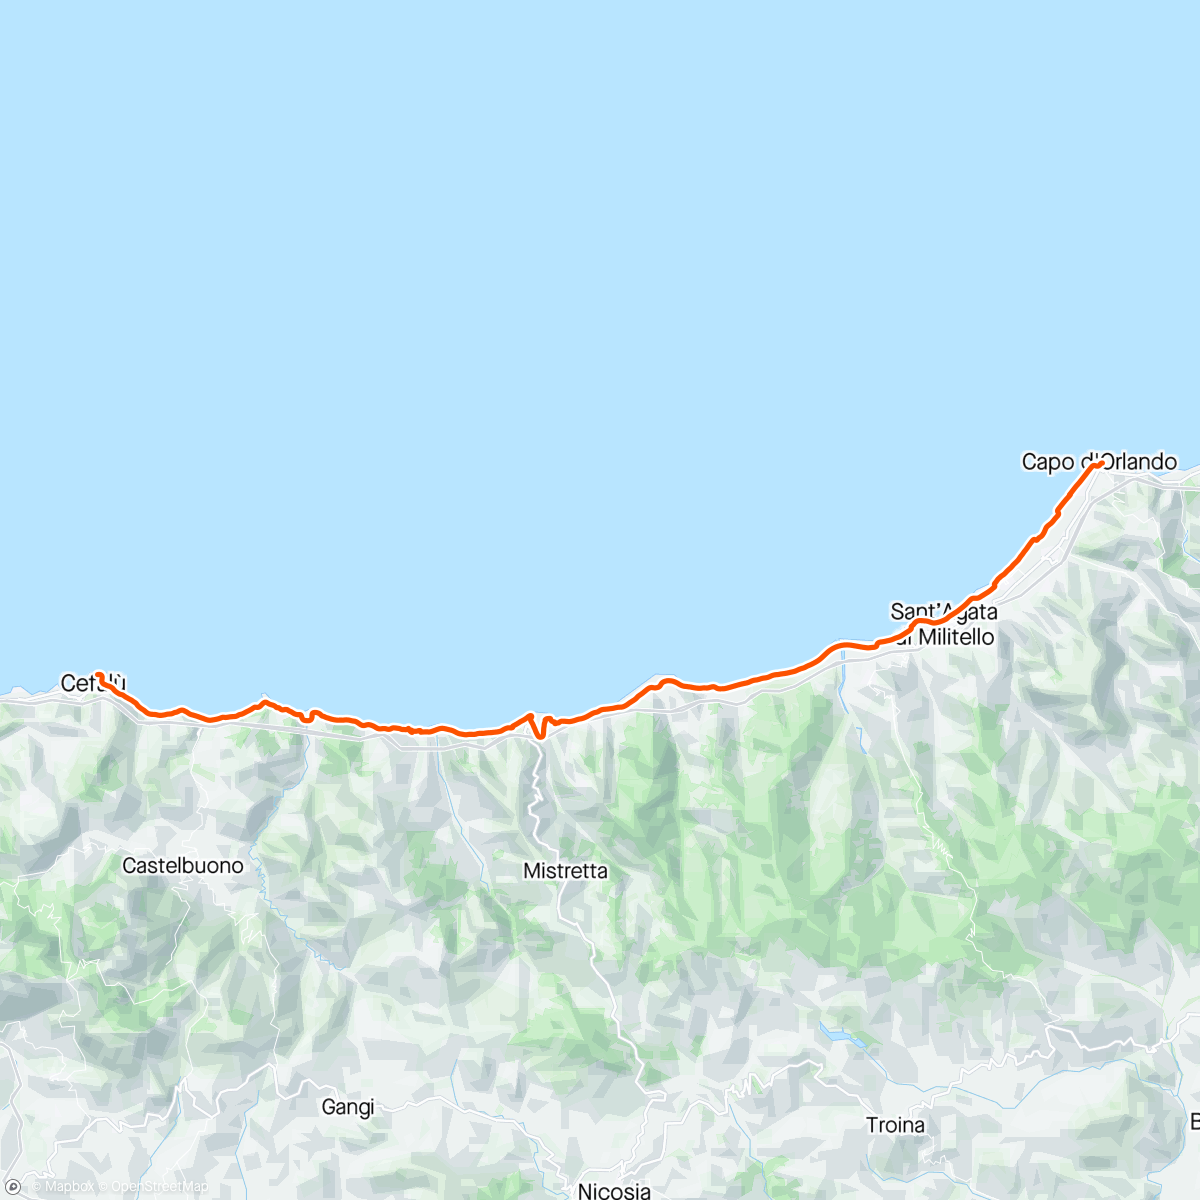 Mappa dell'attività Periplo della Sicilia con Anna. 16 tappa Capo d'Orlando Cefalù.